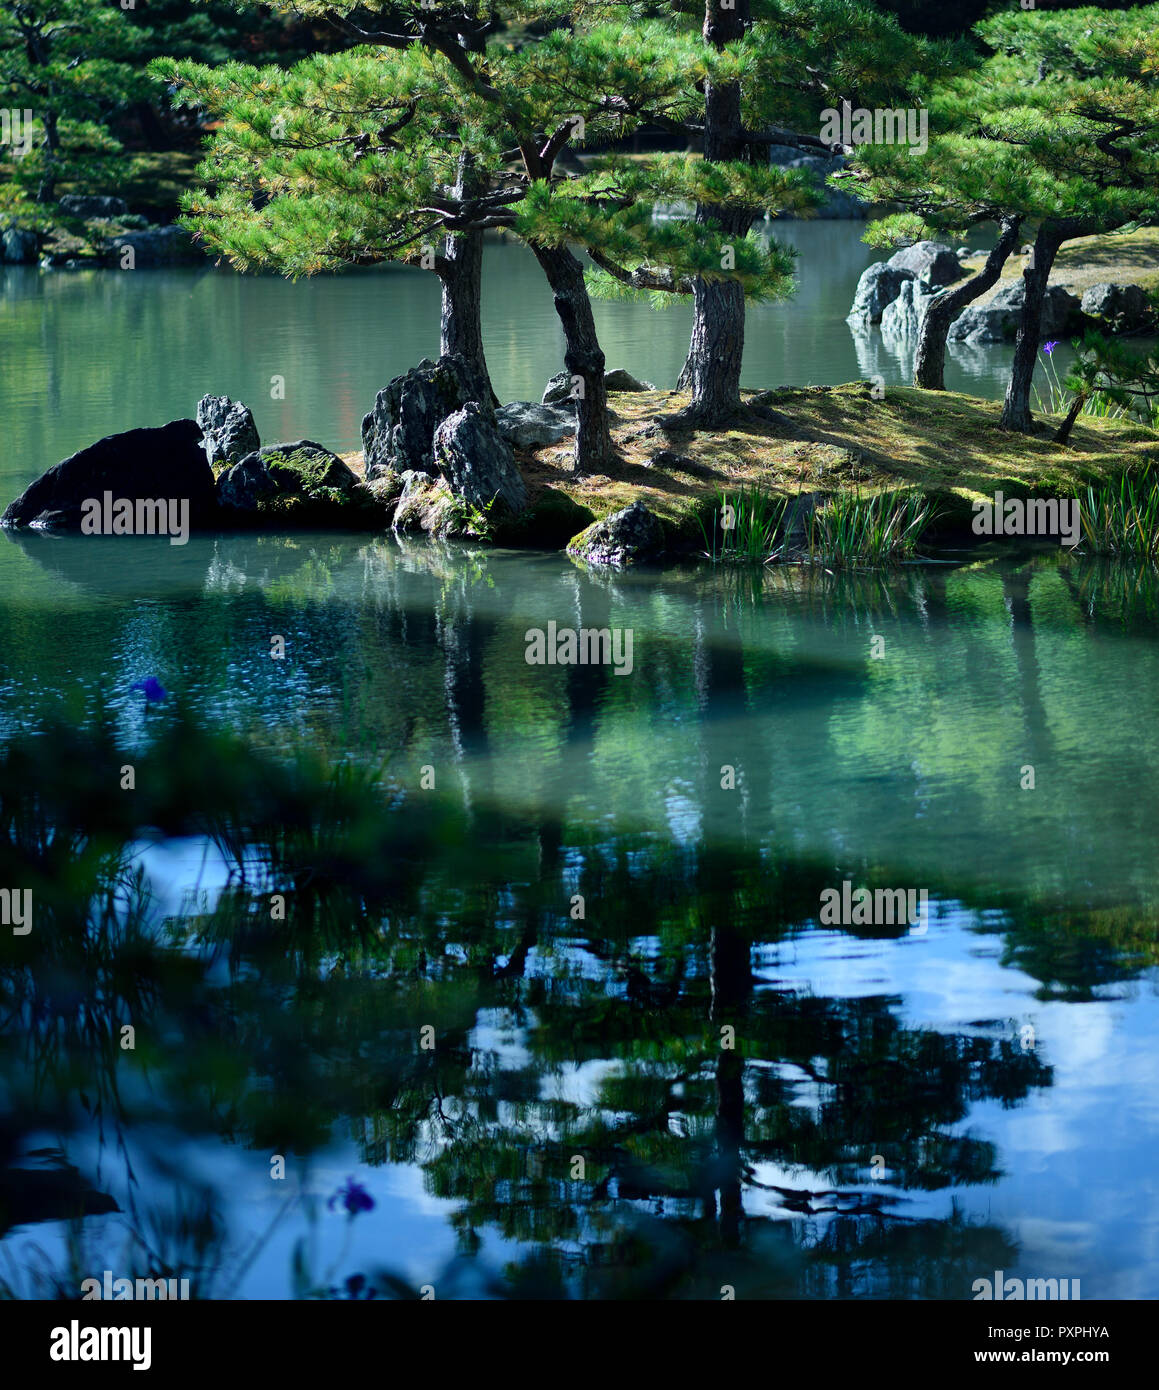 Ruhige Landschaft mit Kiefern auf einer Insel in einem Teich von einem japanischen Zen Garten mit schönen Spiegelungen im Wasser. Rokuon-ji Tempel, Kyoto, Japan. Stockfoto